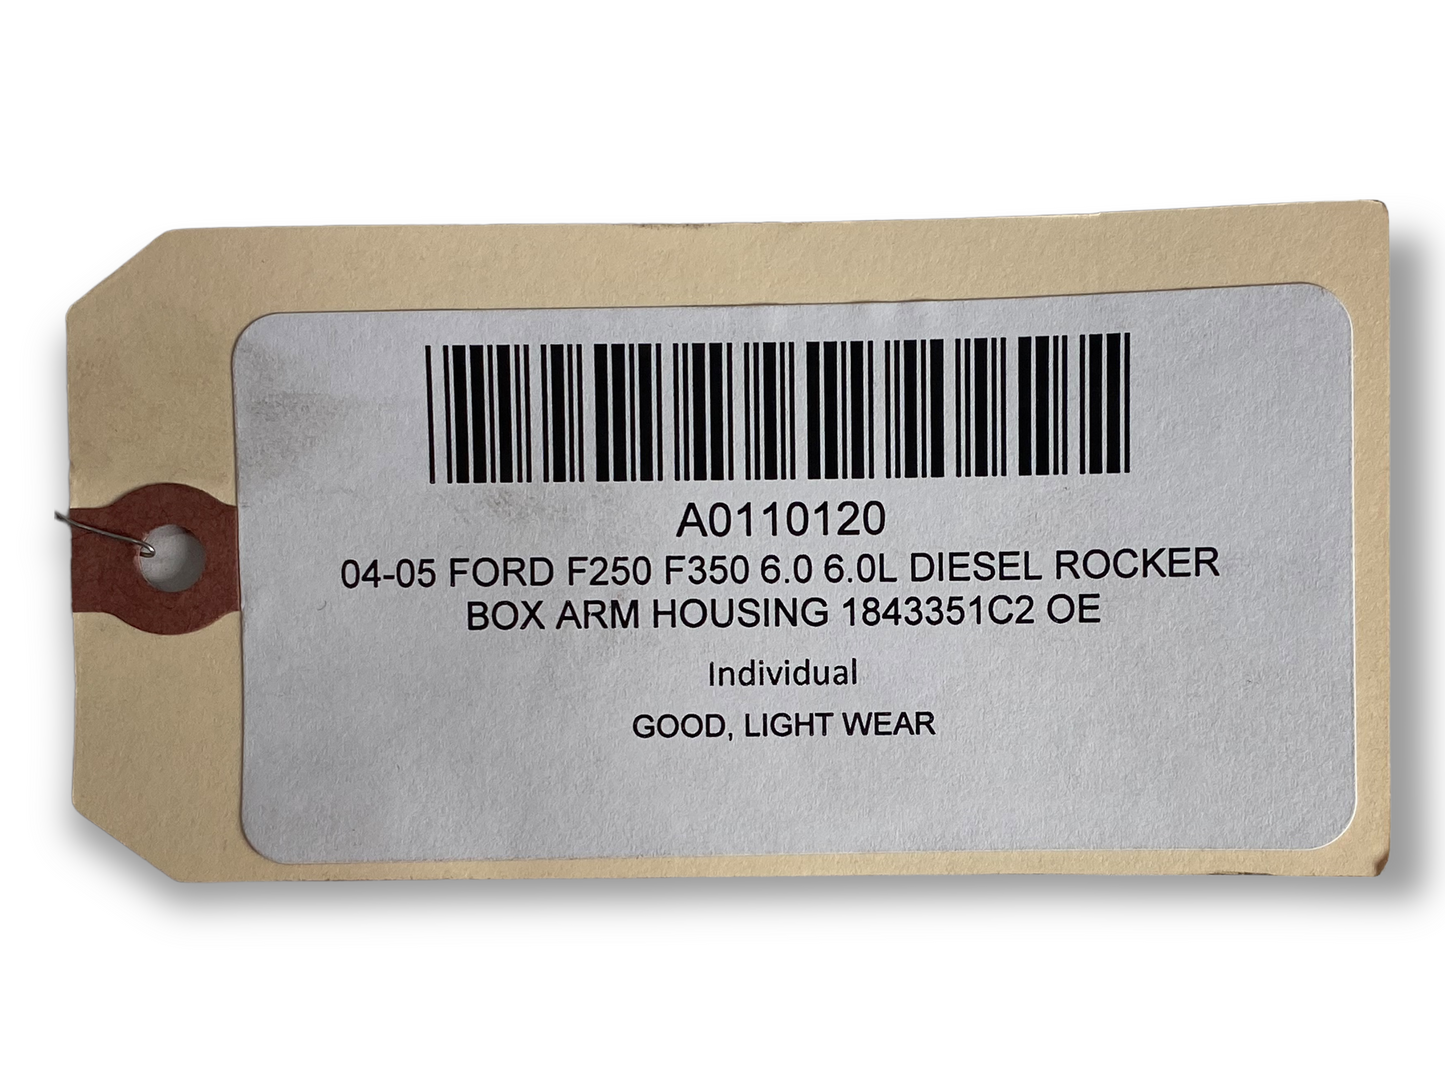 03-05 FORD F250 F350 6.0 6.0L DIESEL ROCKER BOX ARM HOUSING 18MM 1843351C2 OE